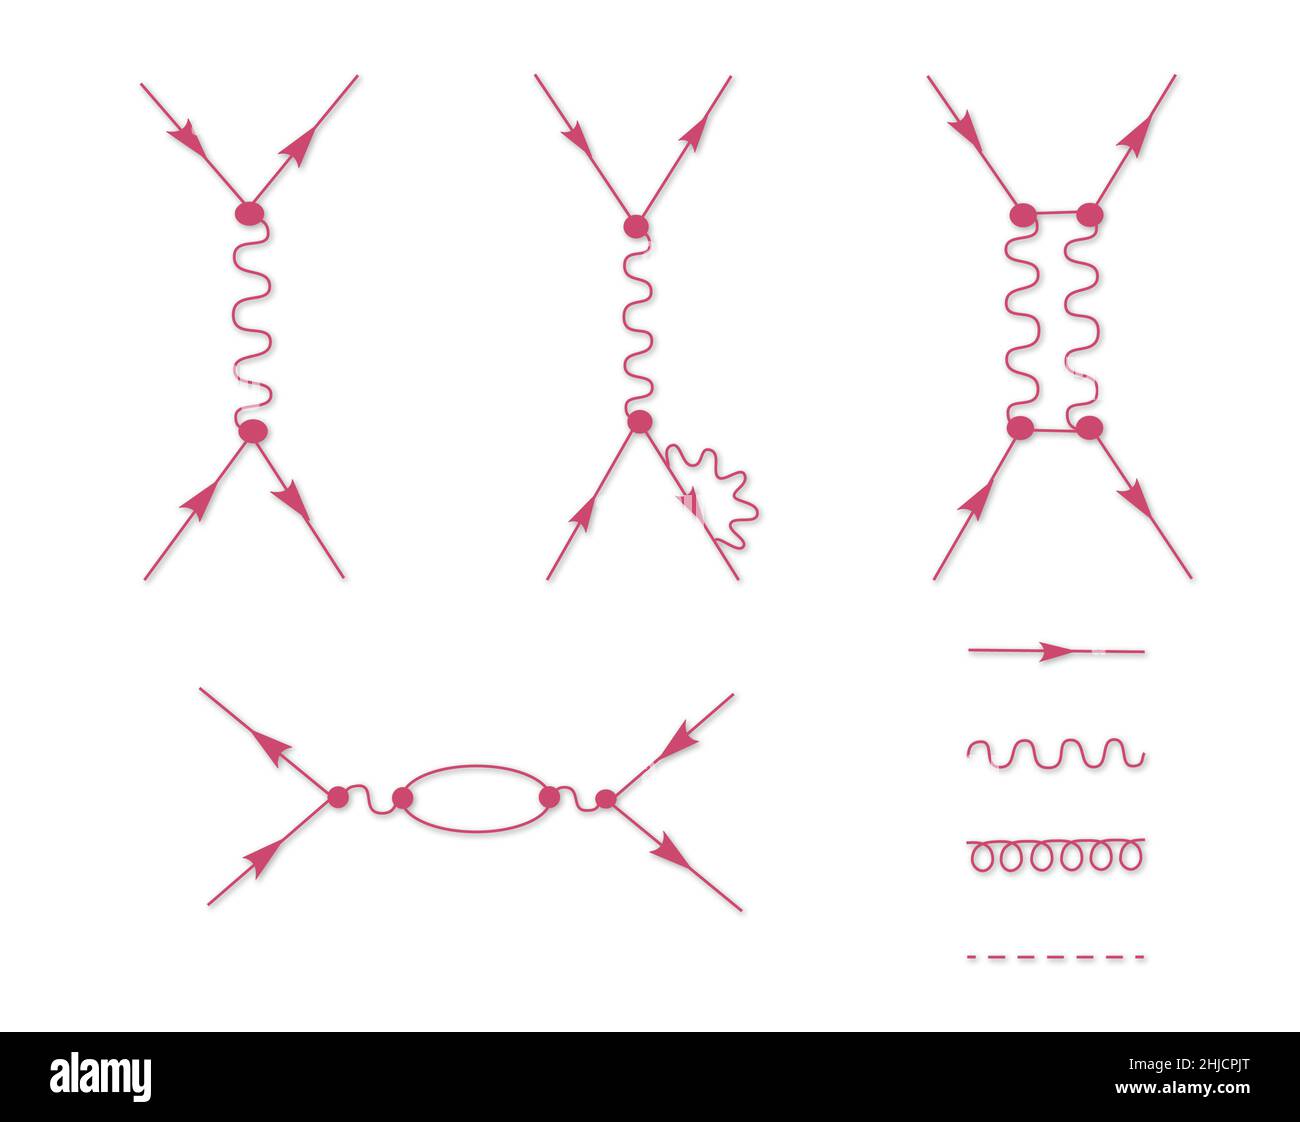 Diagrammi che rappresentano le interazioni elettromagnetiche delle particelle subatomiche cariche. Questi tipi di diagrammi sono stati inventati dal fisico Richard Feynman. Il diagramma può essere verticale o orizzontale. Foto Stock